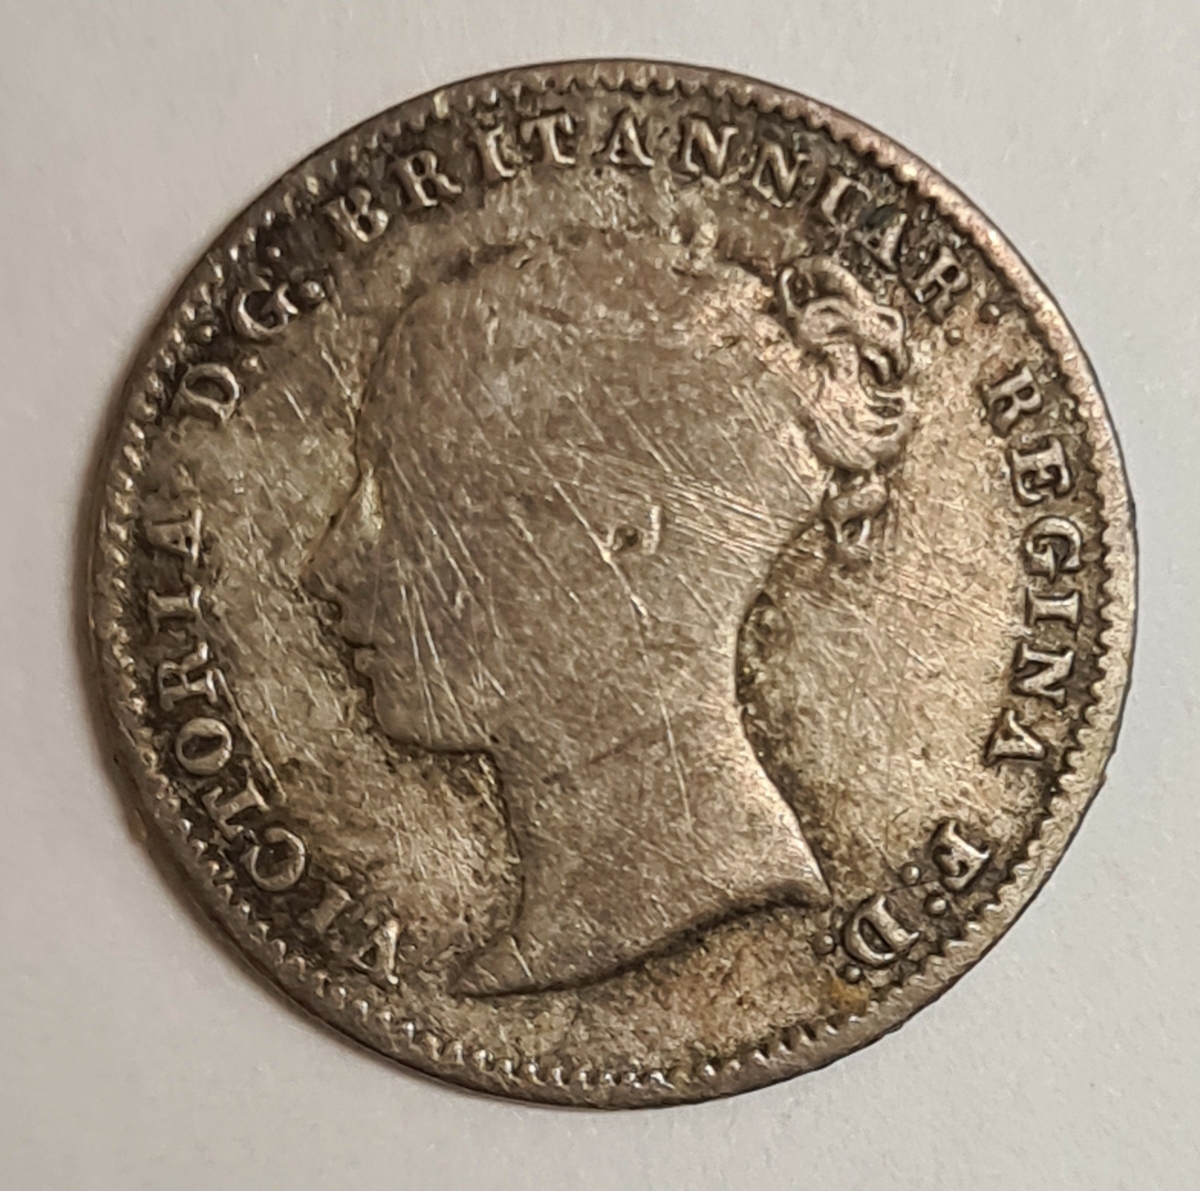 2 mynt från Storbritanien.
3 Pence, 1861